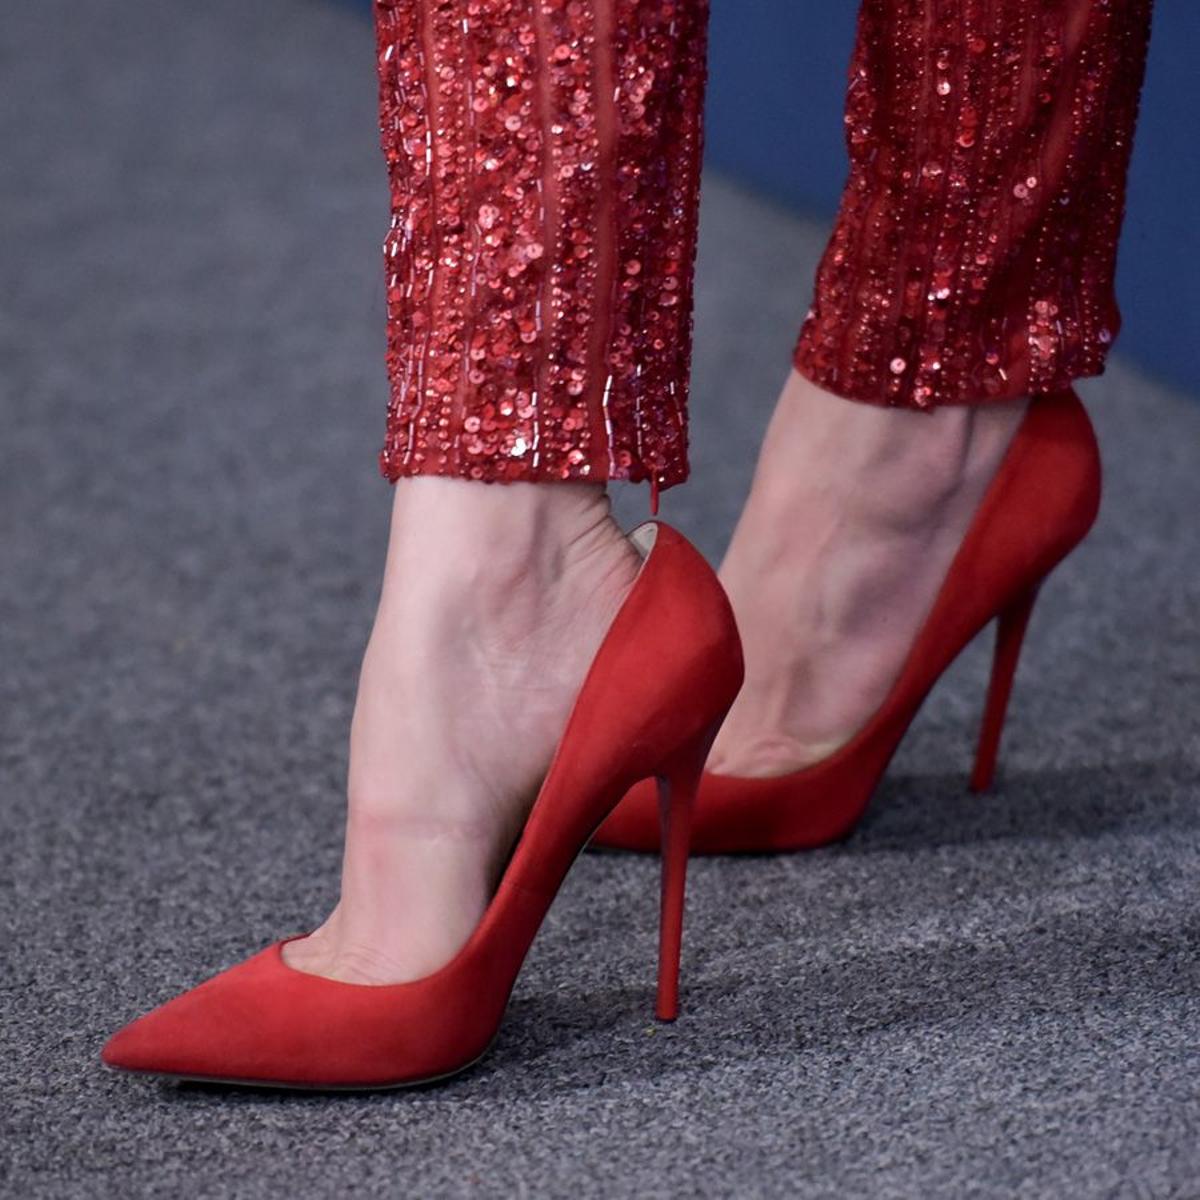 Los zapatos de Manolo Blahnik de Jennifer López en la presentación de la final de American Idol